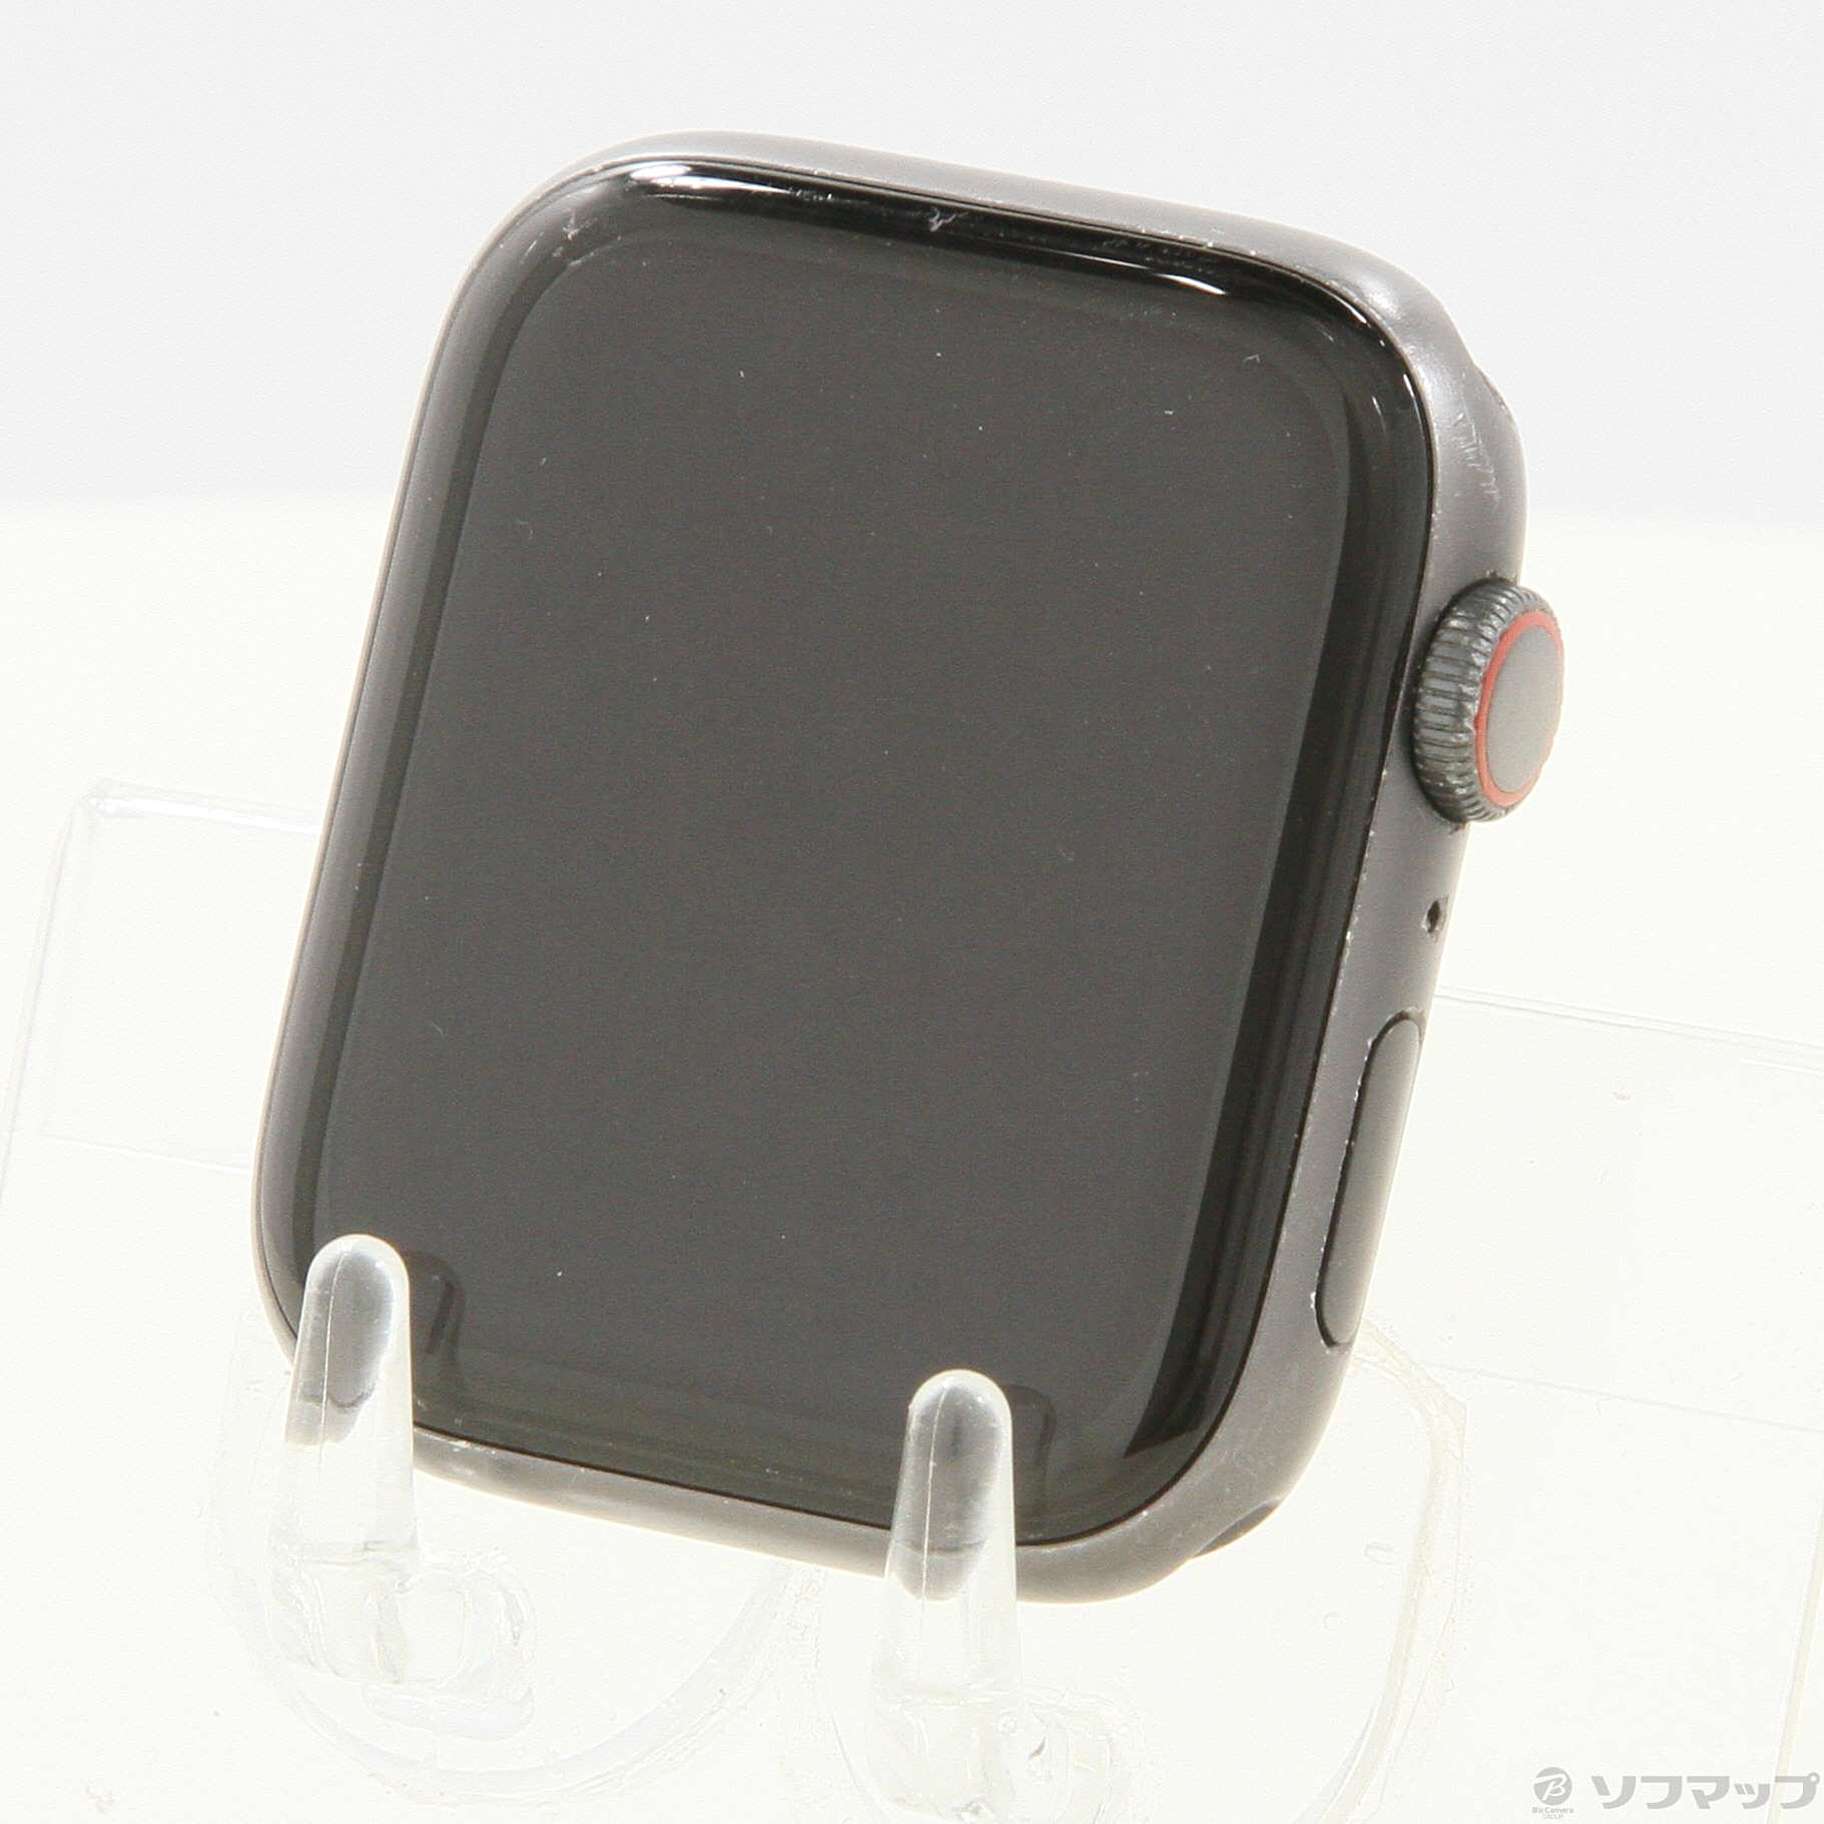 中古】Apple Watch Series 5 GPS + Cellular 44mm スペースグレイ